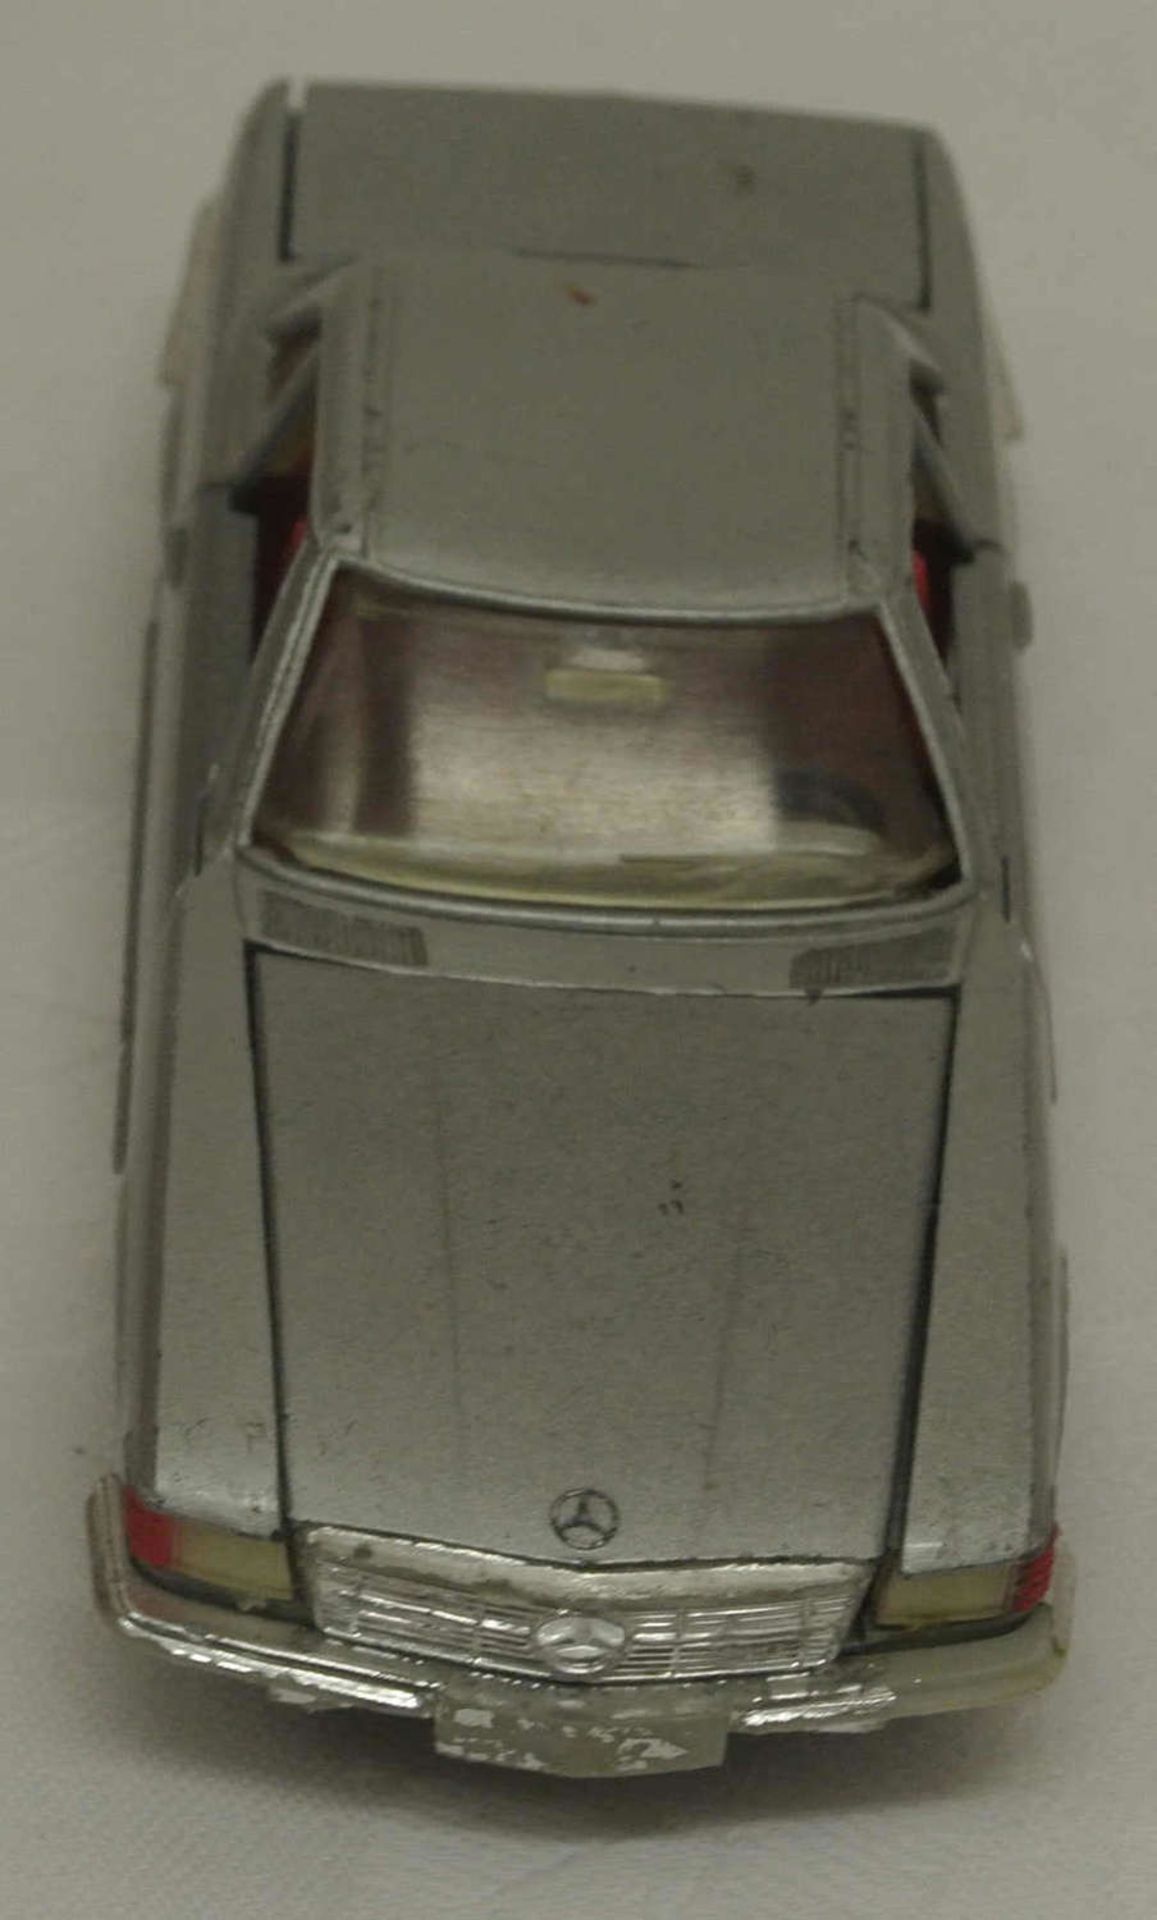 Märklin Modellauto "Mercedes Benz 350 SL", silber mit Anhängerkupplung, 1:43, RAK Serie 1813, mit